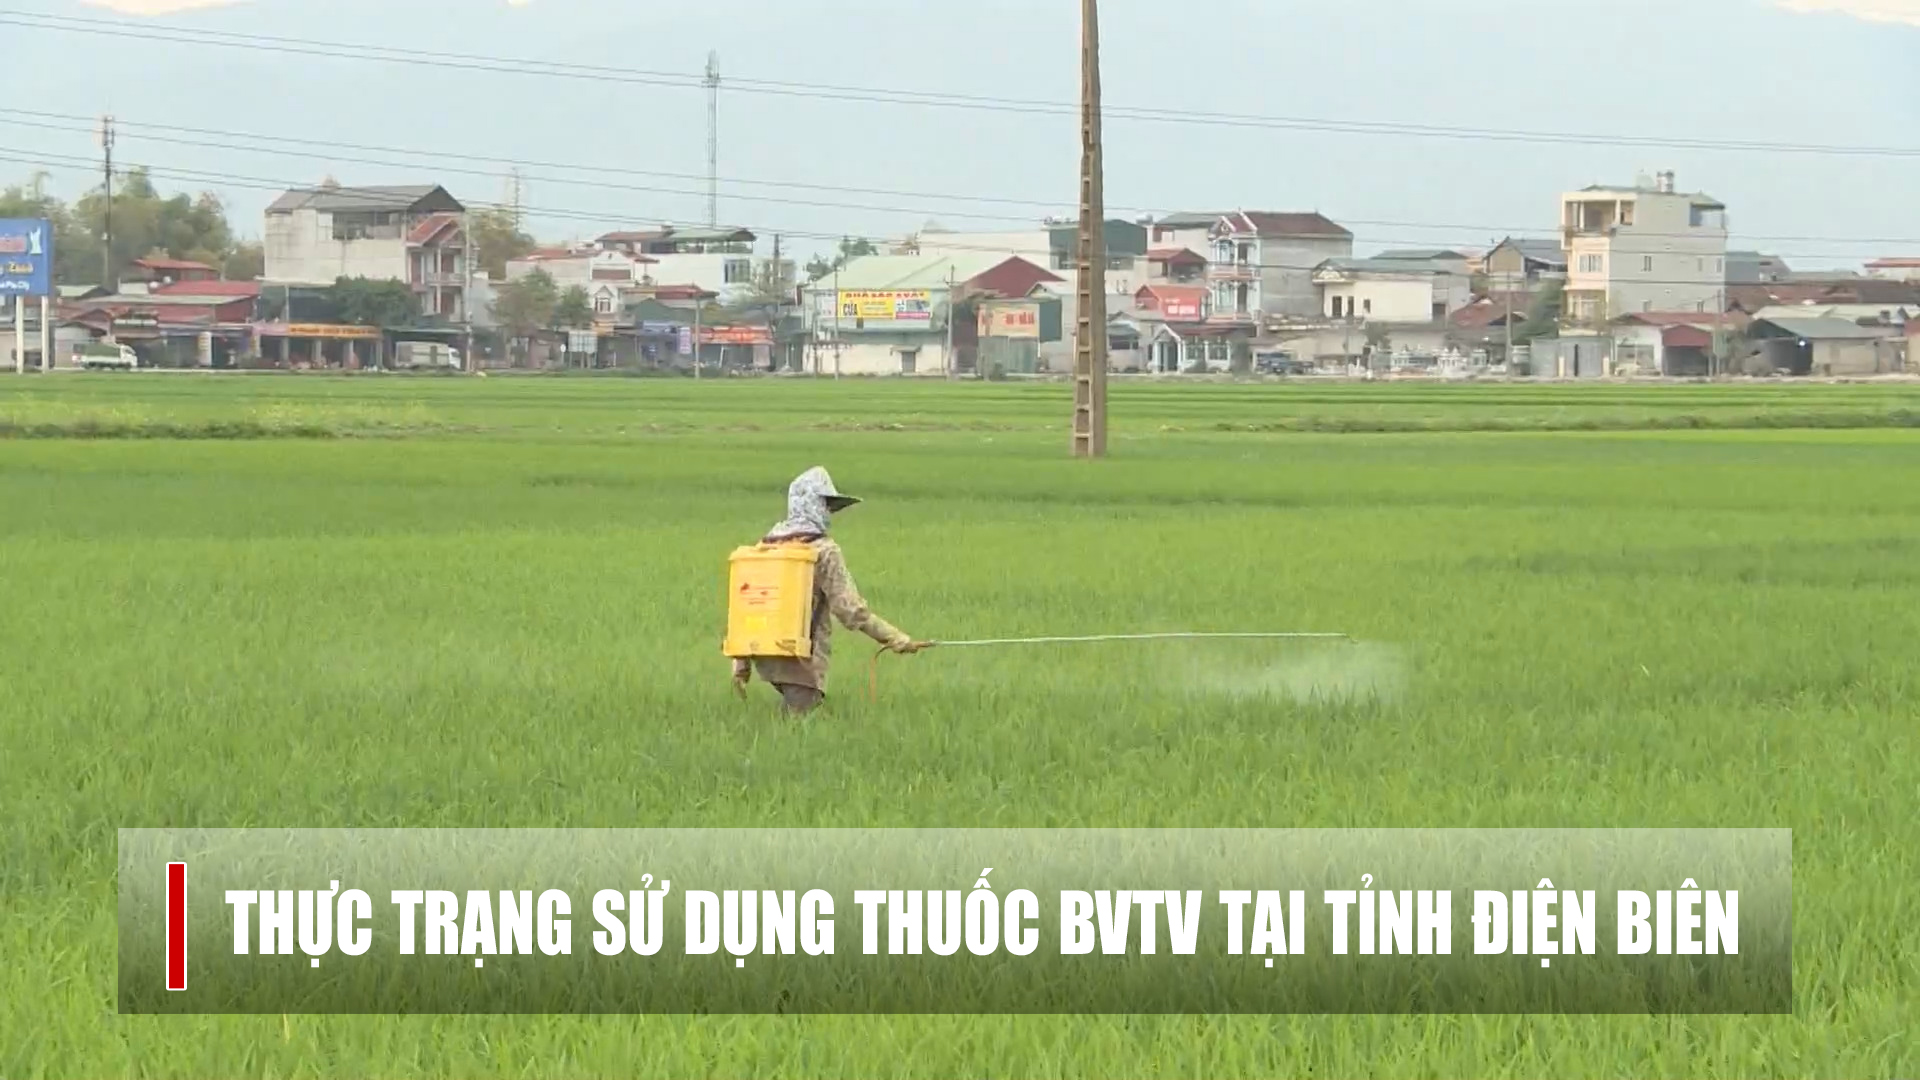 Thực trạng sử dụng thuốc BVTV tại tỉnh Điện Biên